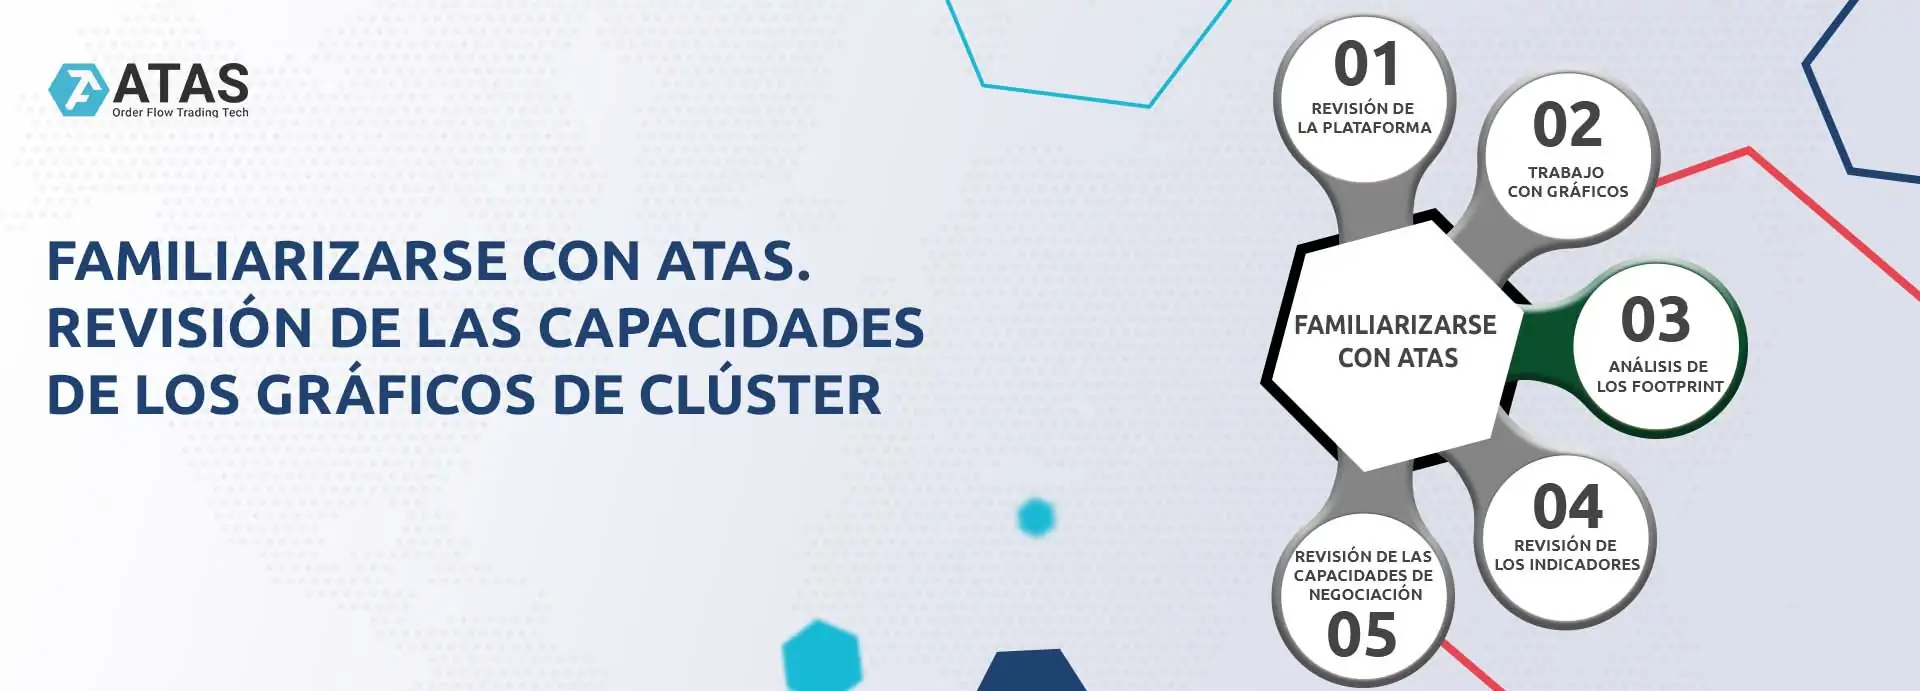 Familiarizarse con ATAS. Revisión de las ventajas y capacidades de los gráficos en la plataforma ATAS